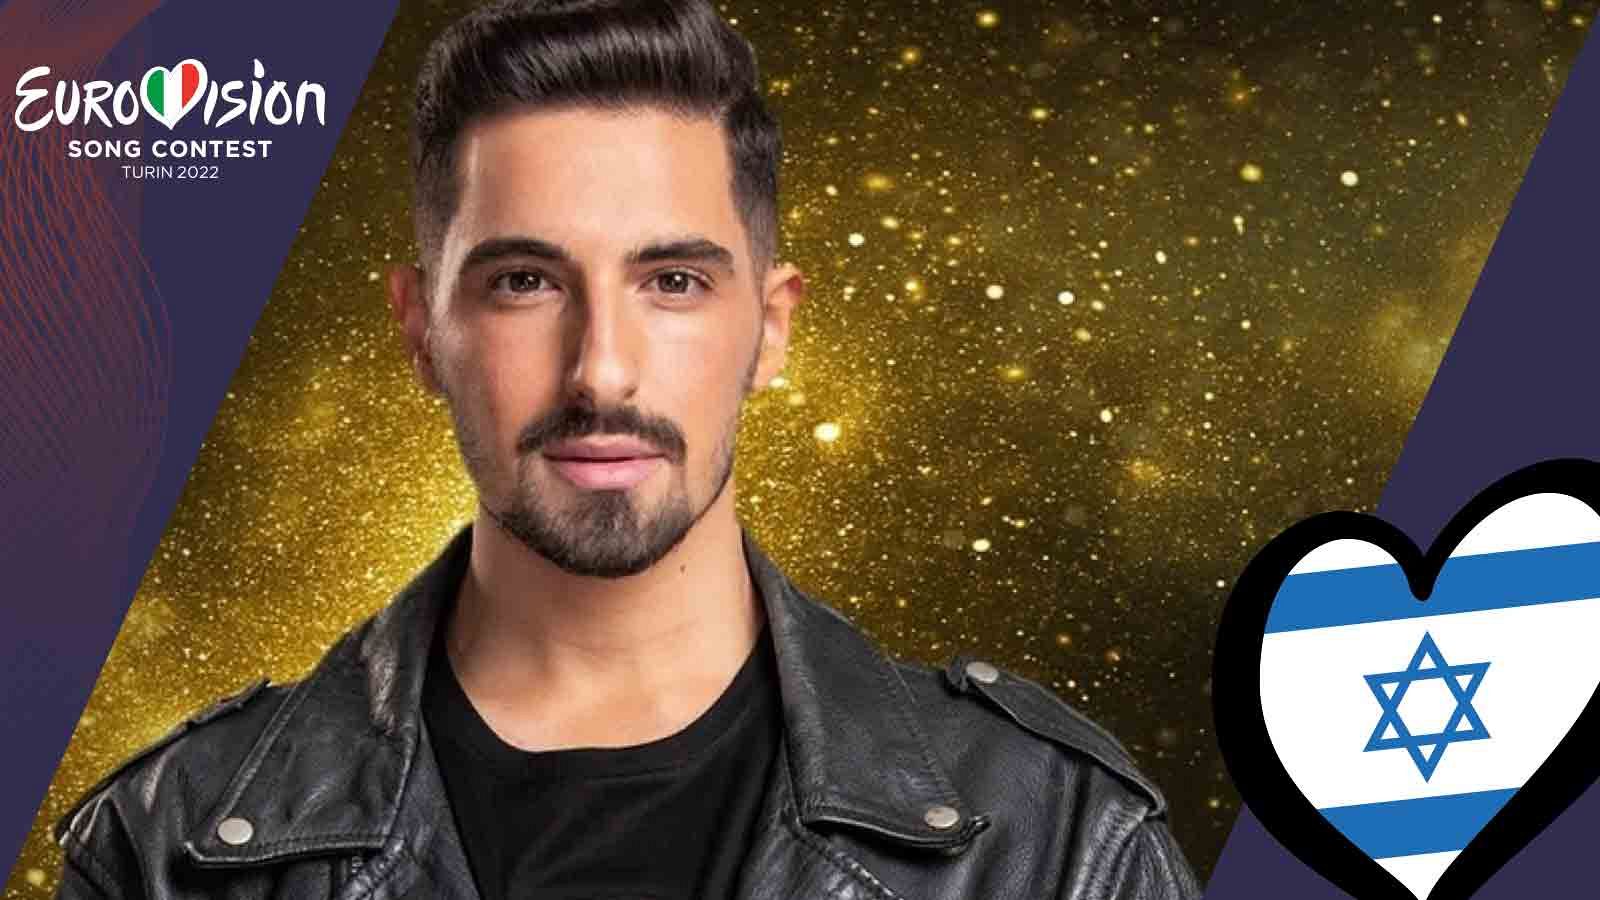 Eurovisión 2022 | Michael Ben David "I.M" (Israel)